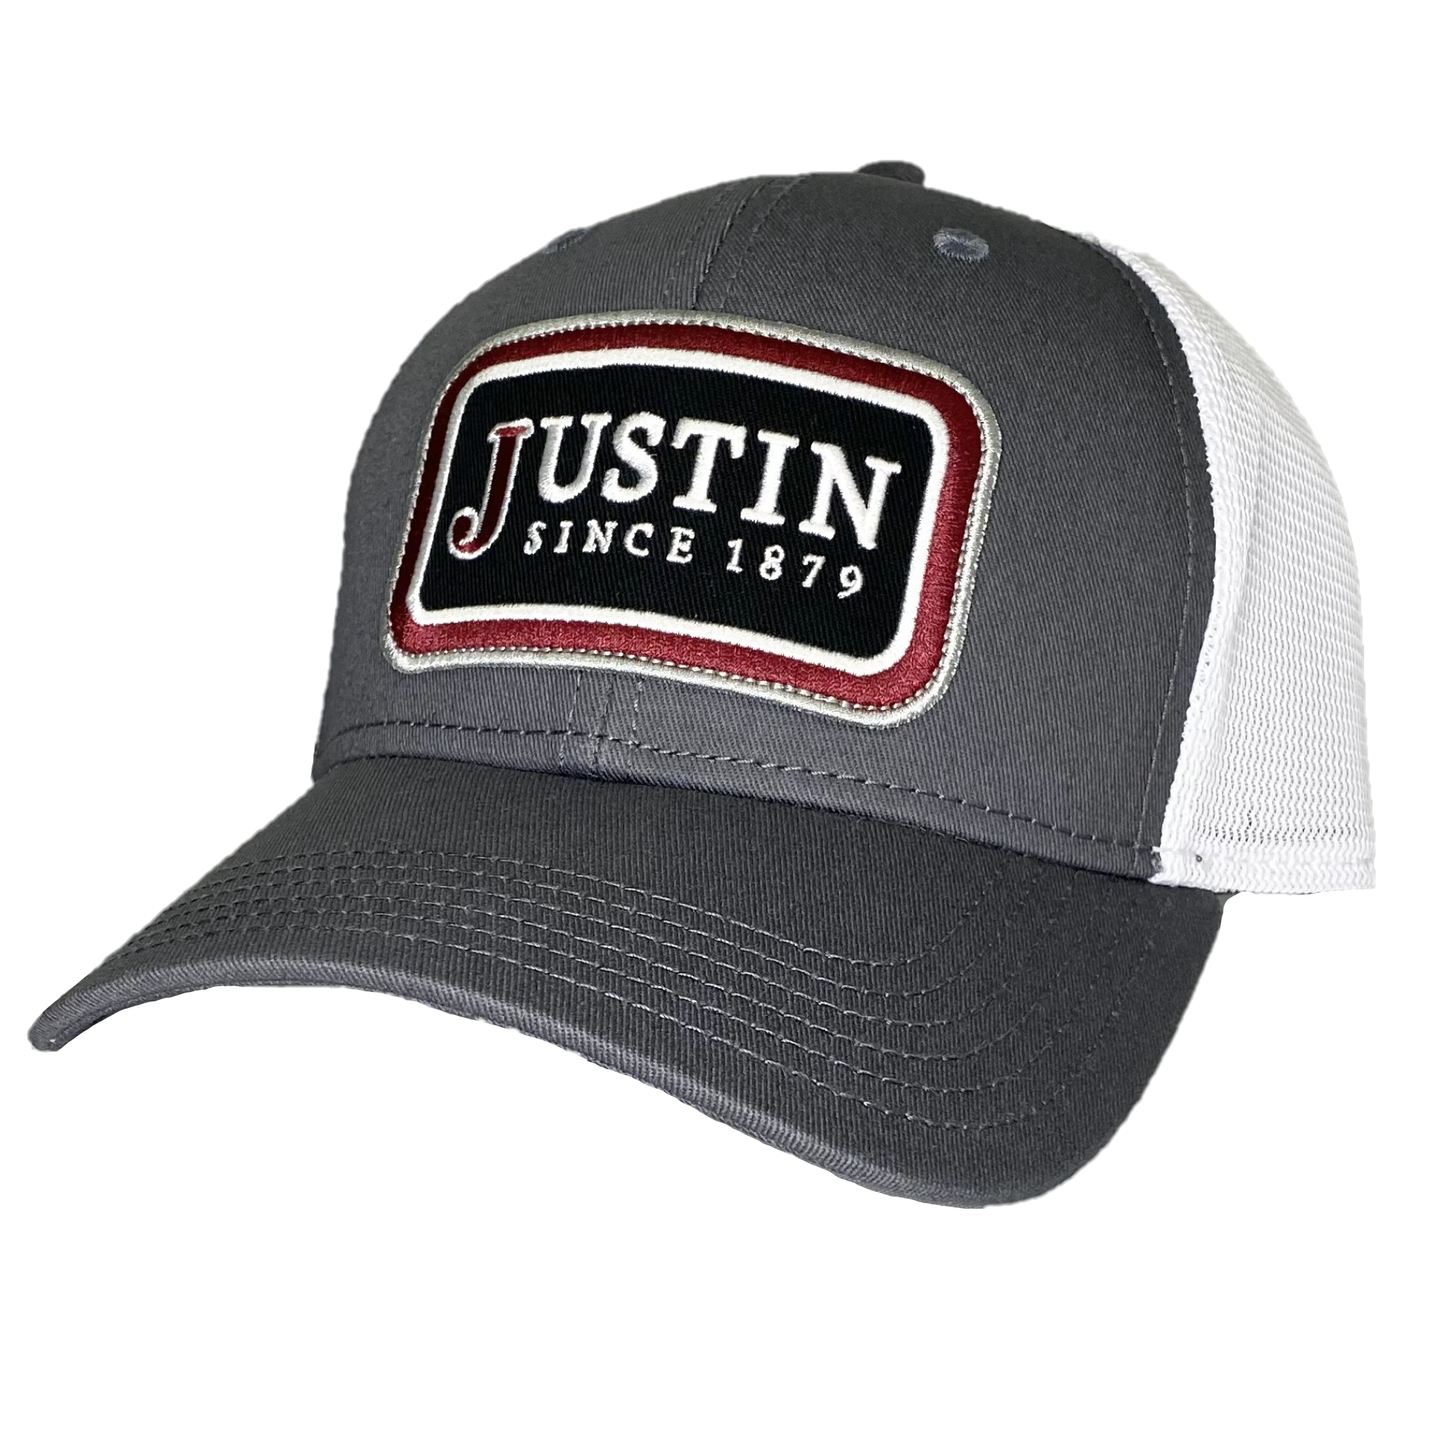 Justin Men's Logo Embroidery Patch Grey Snapback Hat JCBC729-GRY